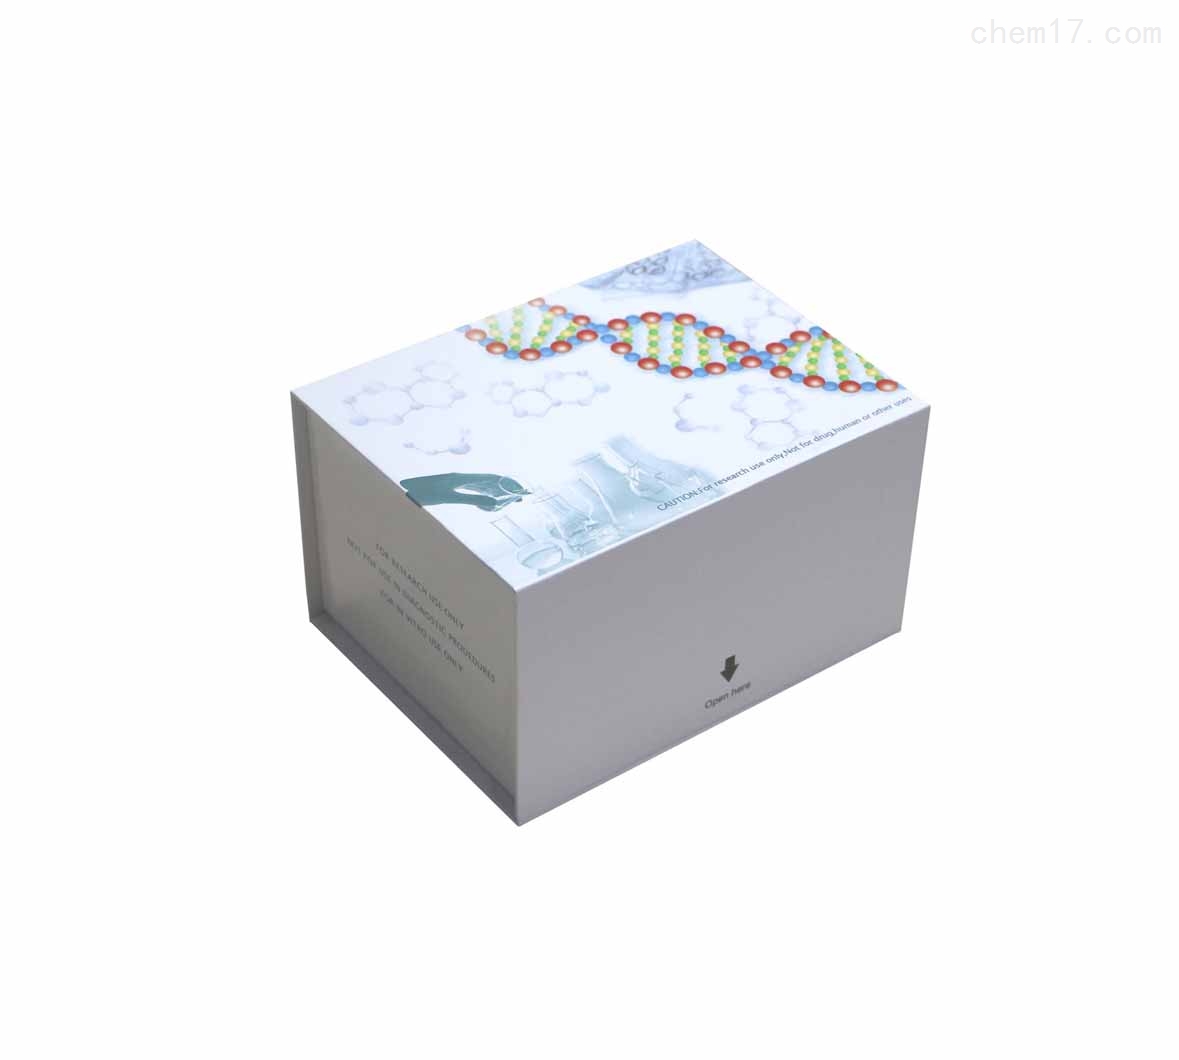 人分泌型卷曲相关蛋白5(SFRP5)ELISA试剂盒技术指导